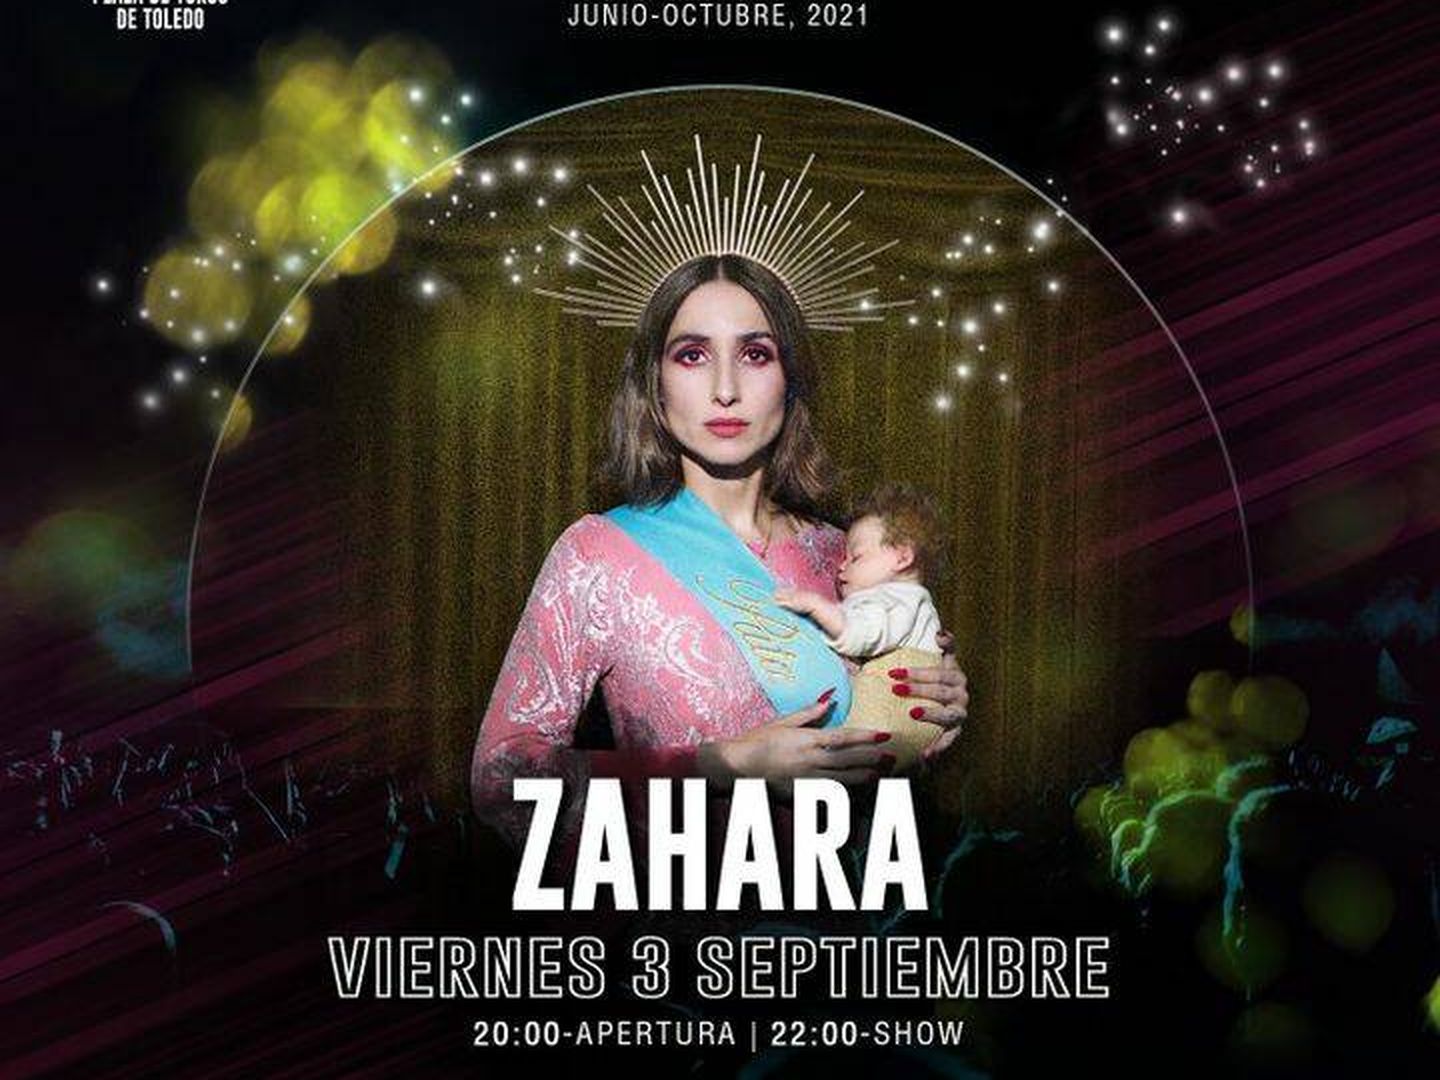 Cartel del concierto de Zahara retirado en Toledo